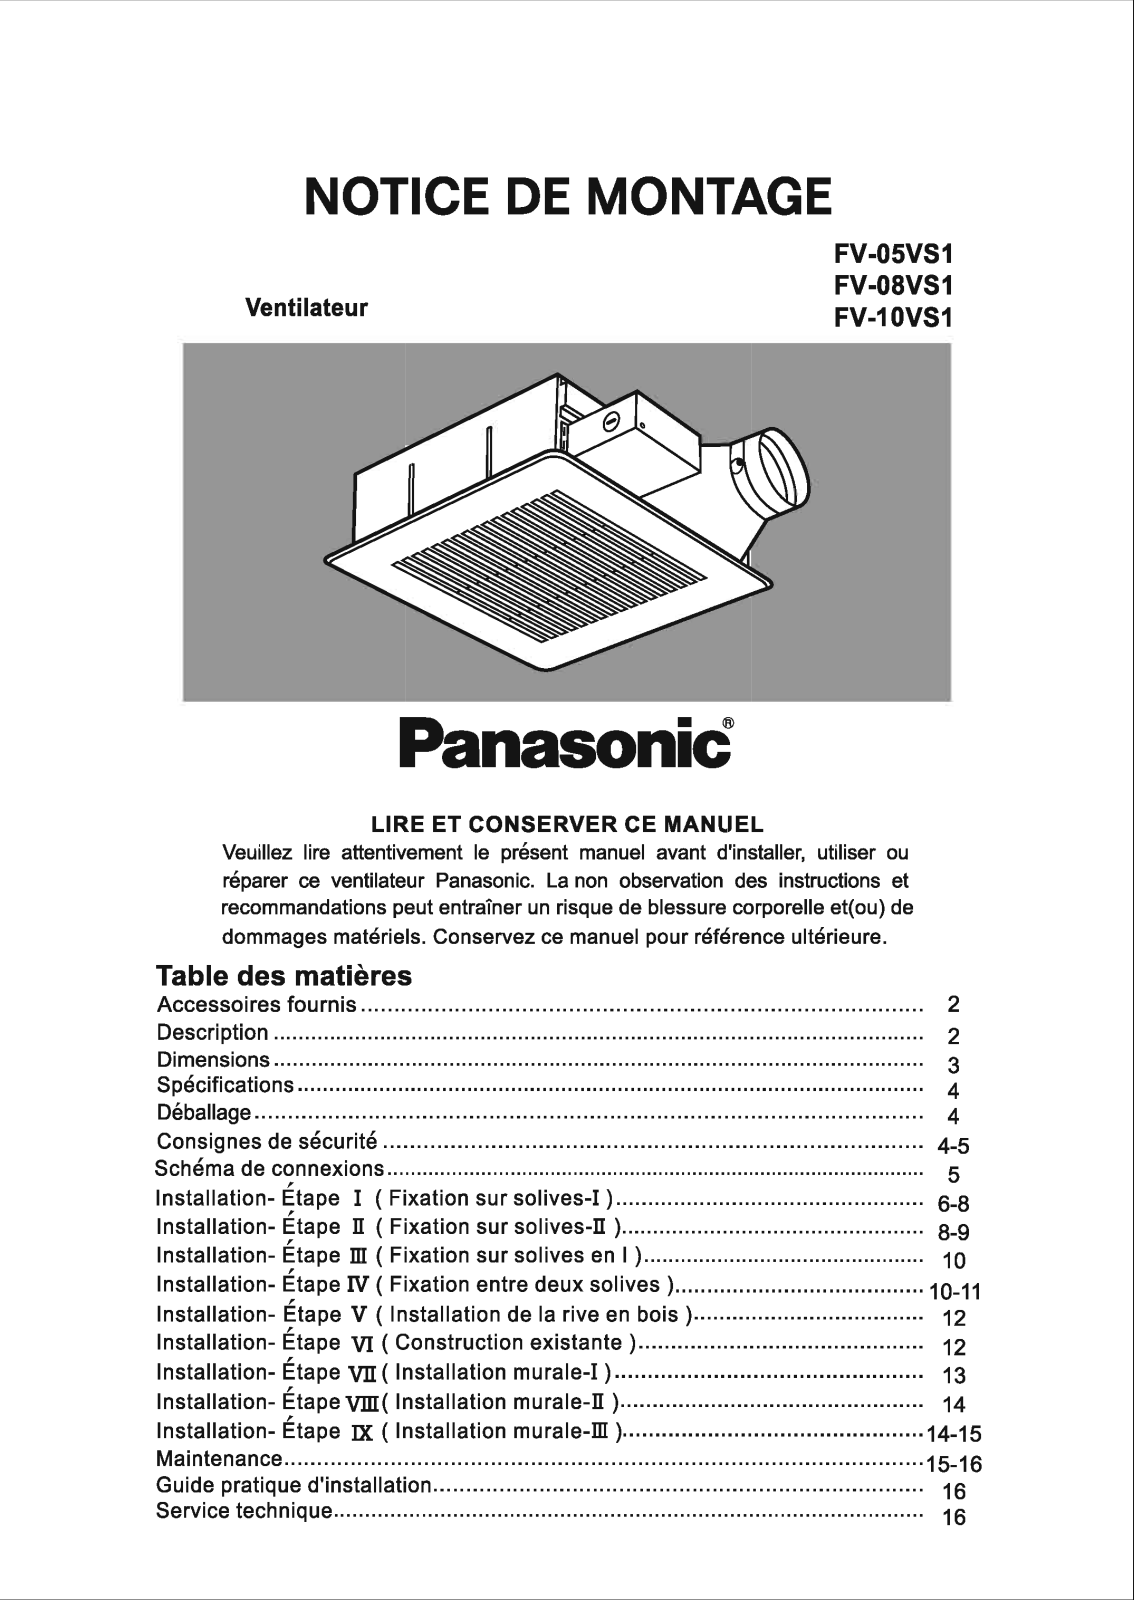 Panasonic fv-08vs1, fv-10vs1 installation